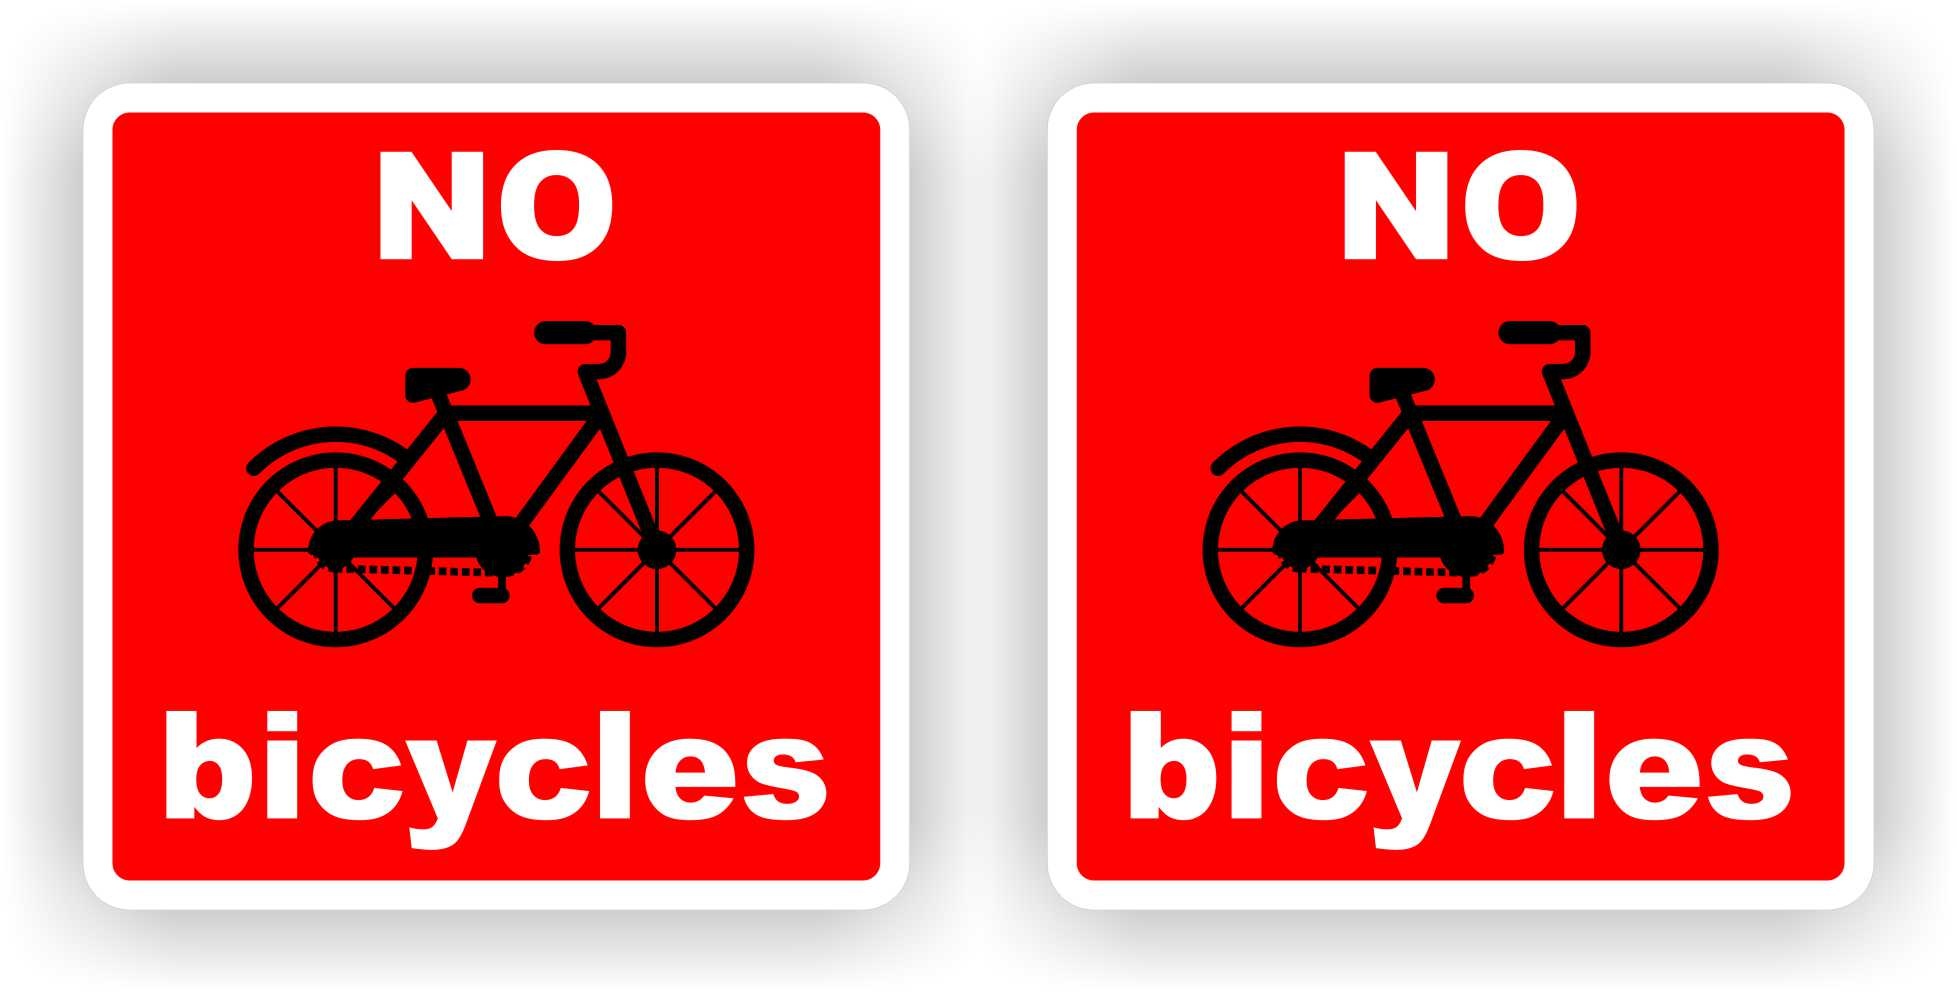 Great Barrier Reef Zweet reflecteren Geen fietsen (GB) No Bicycles 2 stickers van 14 x 14 cm. - JERMA  AllerhandeStickers